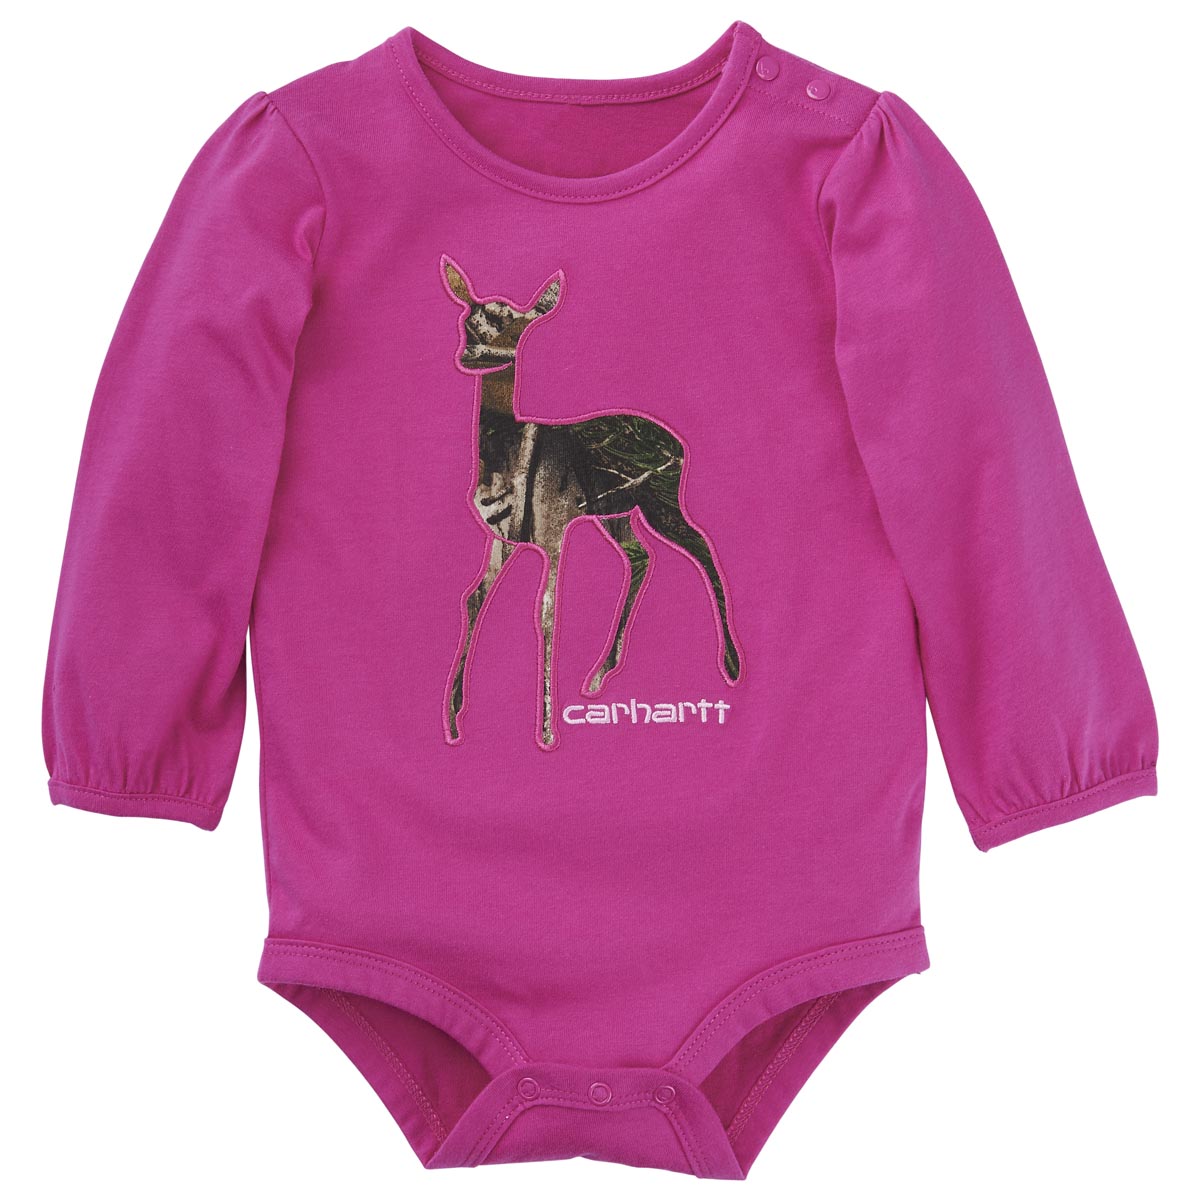 Carhartt Infant Girls' Camo Deer Bodyshirt